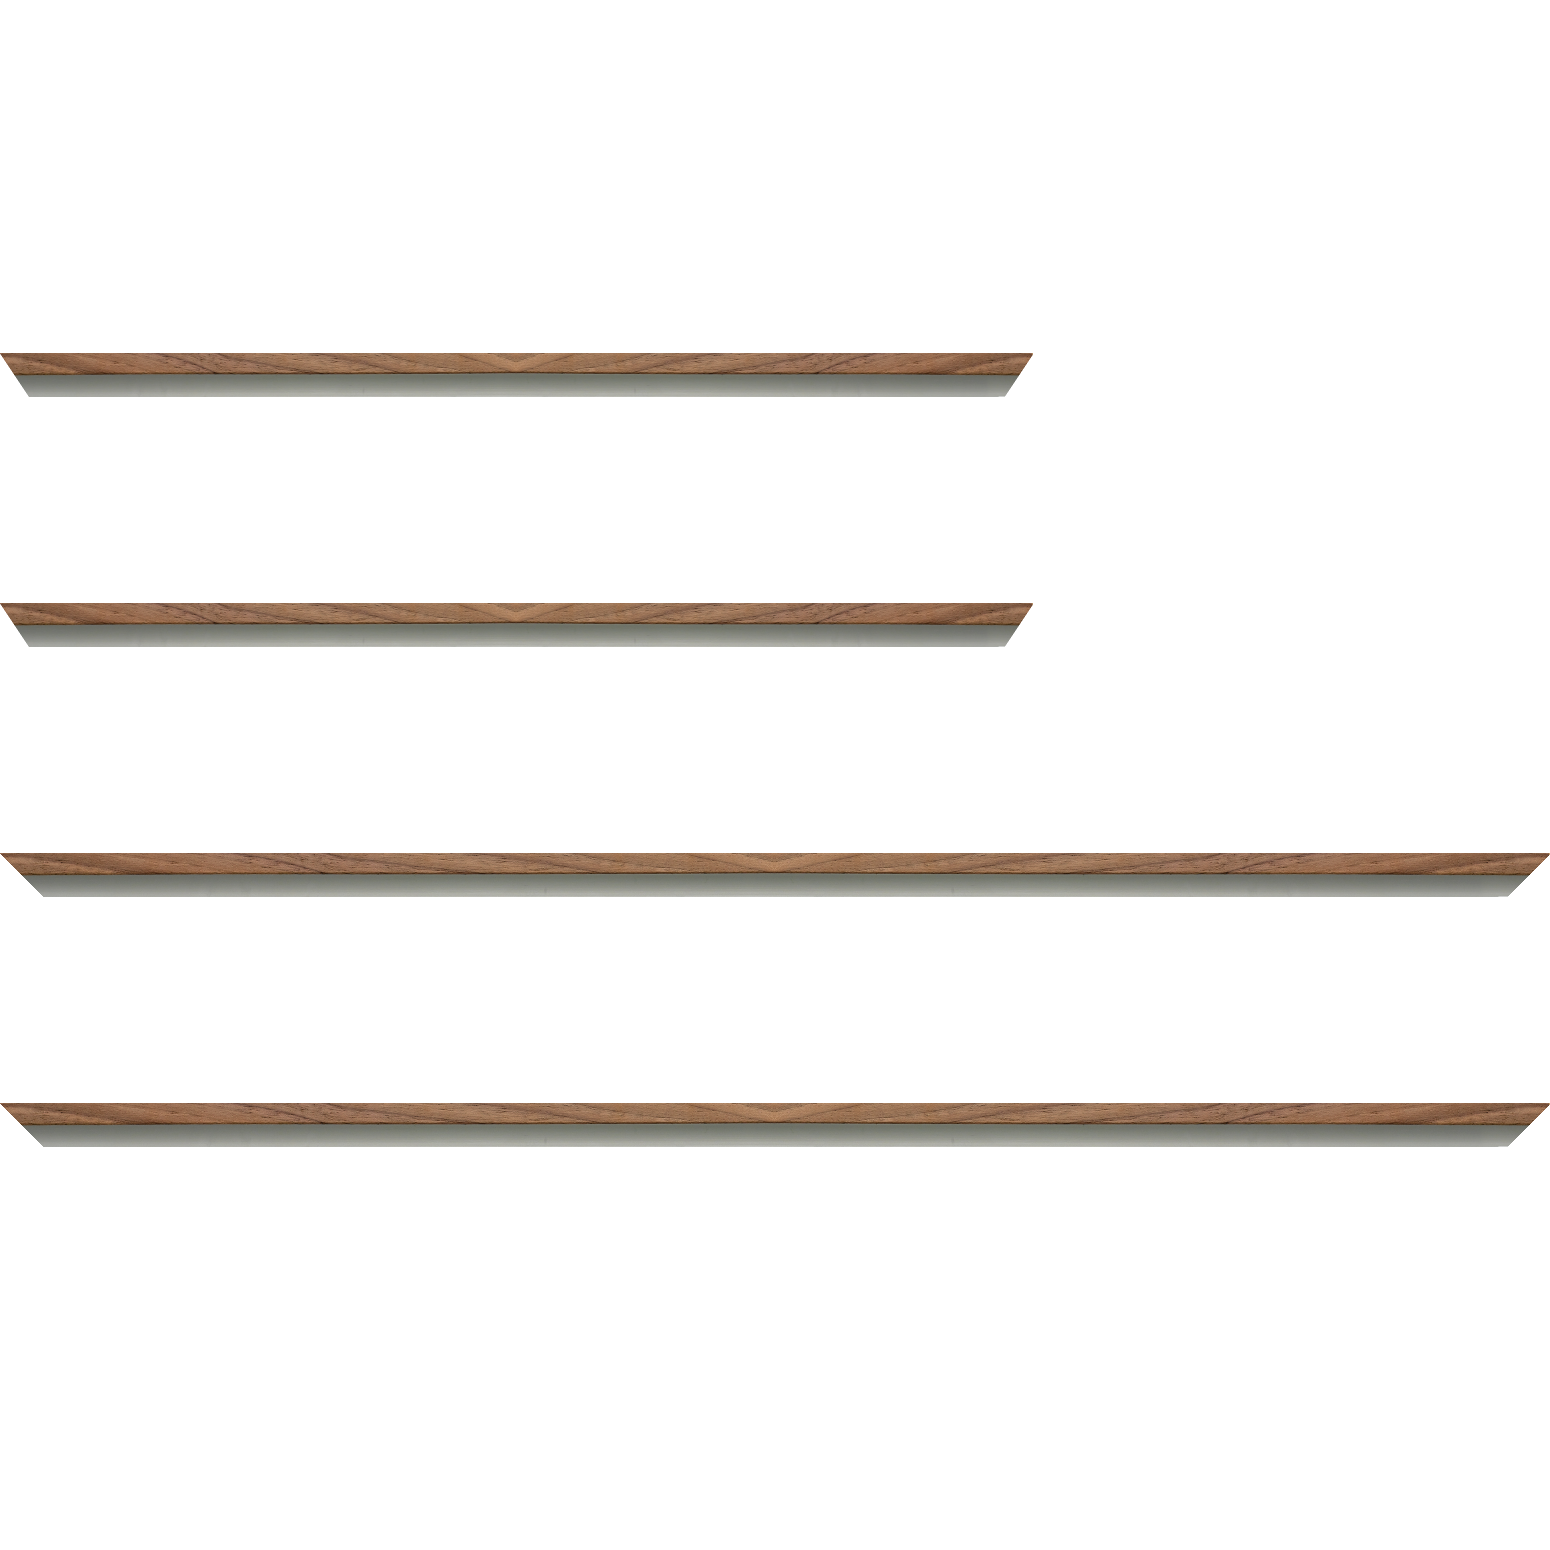 Baguette aluminium profil plat largeur 8mm, placage véritable noyer ,(le sujet qui sera glissé dans le cadre sera en retrait de 6mm de la face du cadre assurant un effet très contemporain) mise en place du sujet rapide et simple: assemblage du cadre par double équerre à vis (livré avec le système d'accrochage qui se glisse dans le profilé) encadrement non assemblé,  livré avec son sachet d'accessoires - 24x30